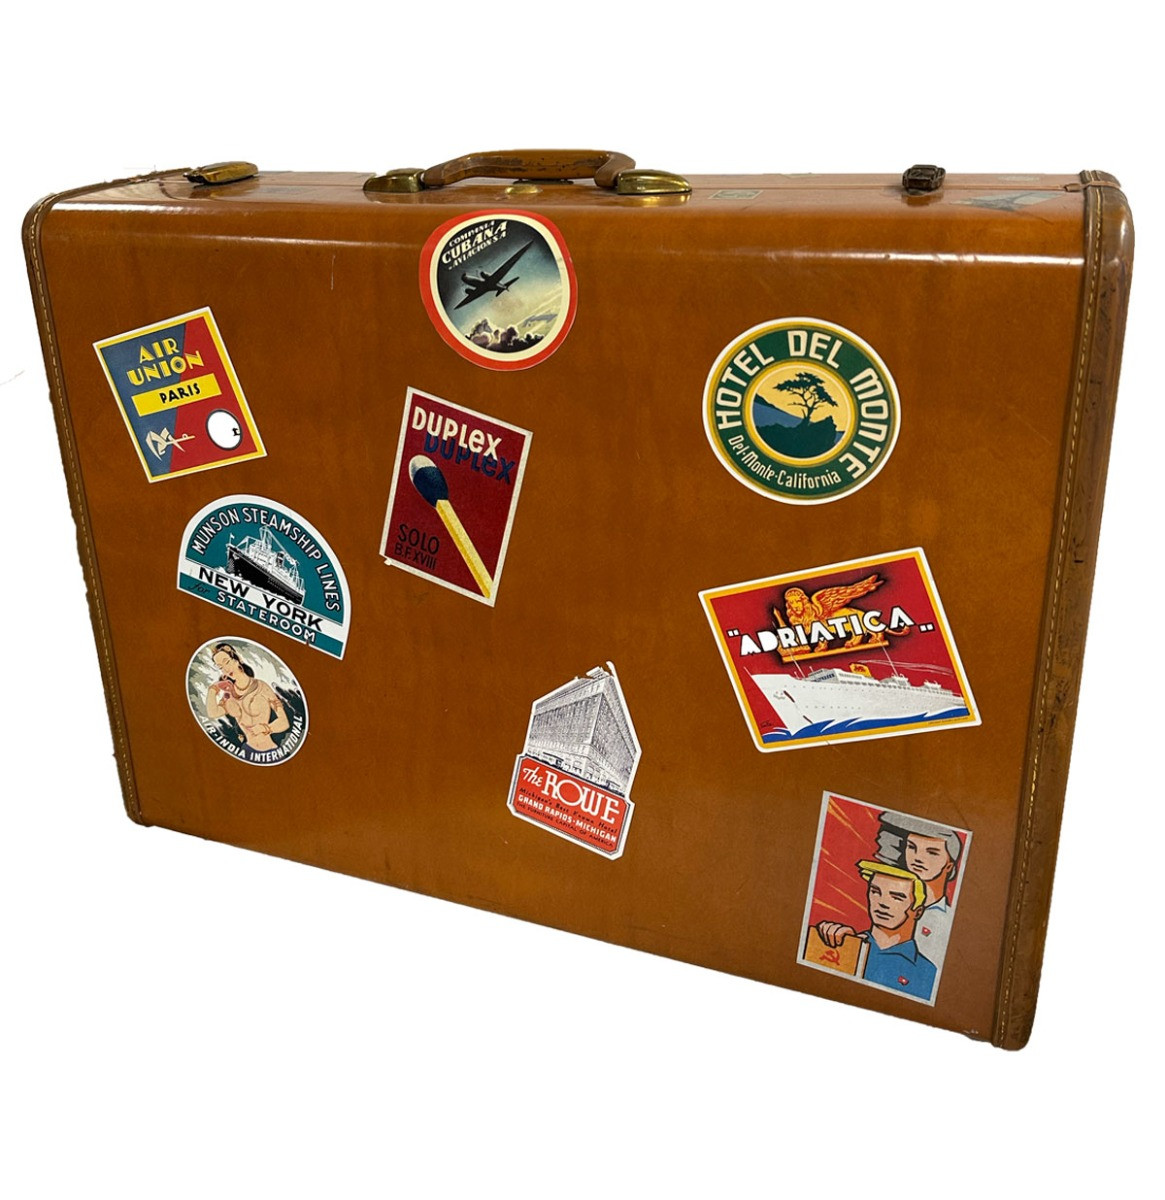 Samsonite Met Stickers Vintage Koffer